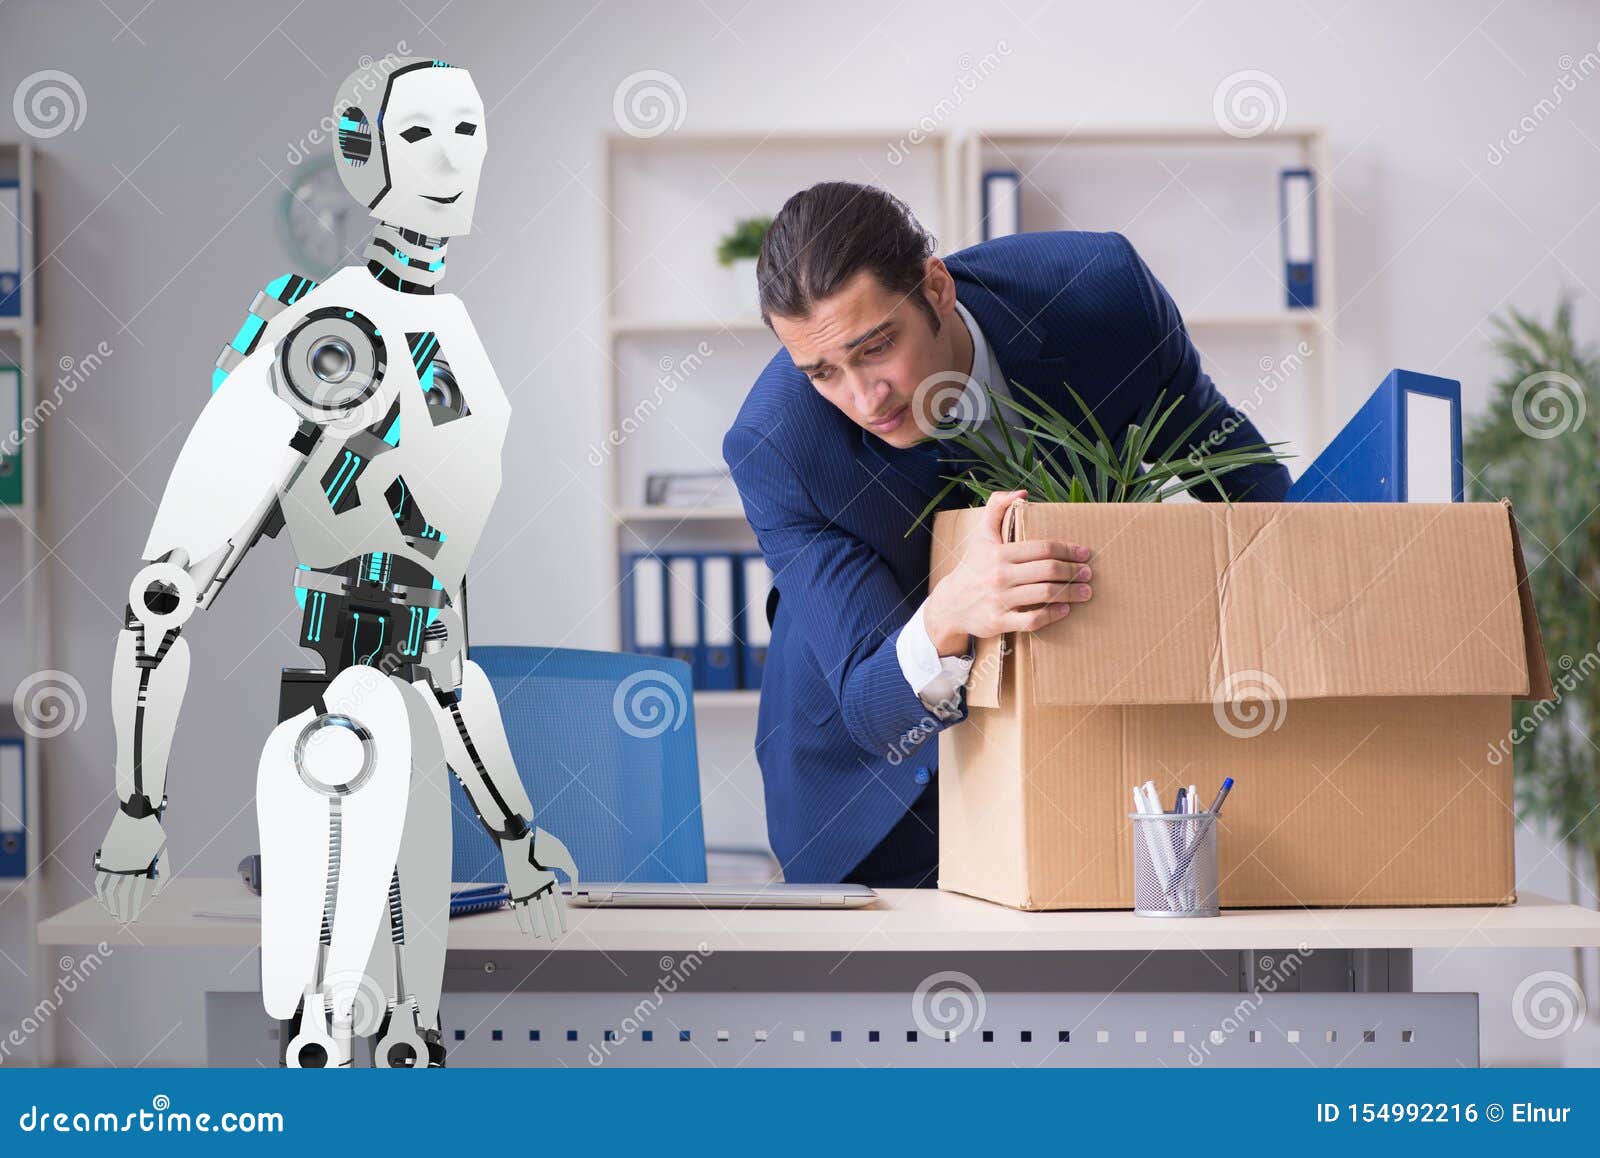 Тема человек и робот. Робот человек. Роботы заменят людей. Робот человек офис. Роботы замещают людей.